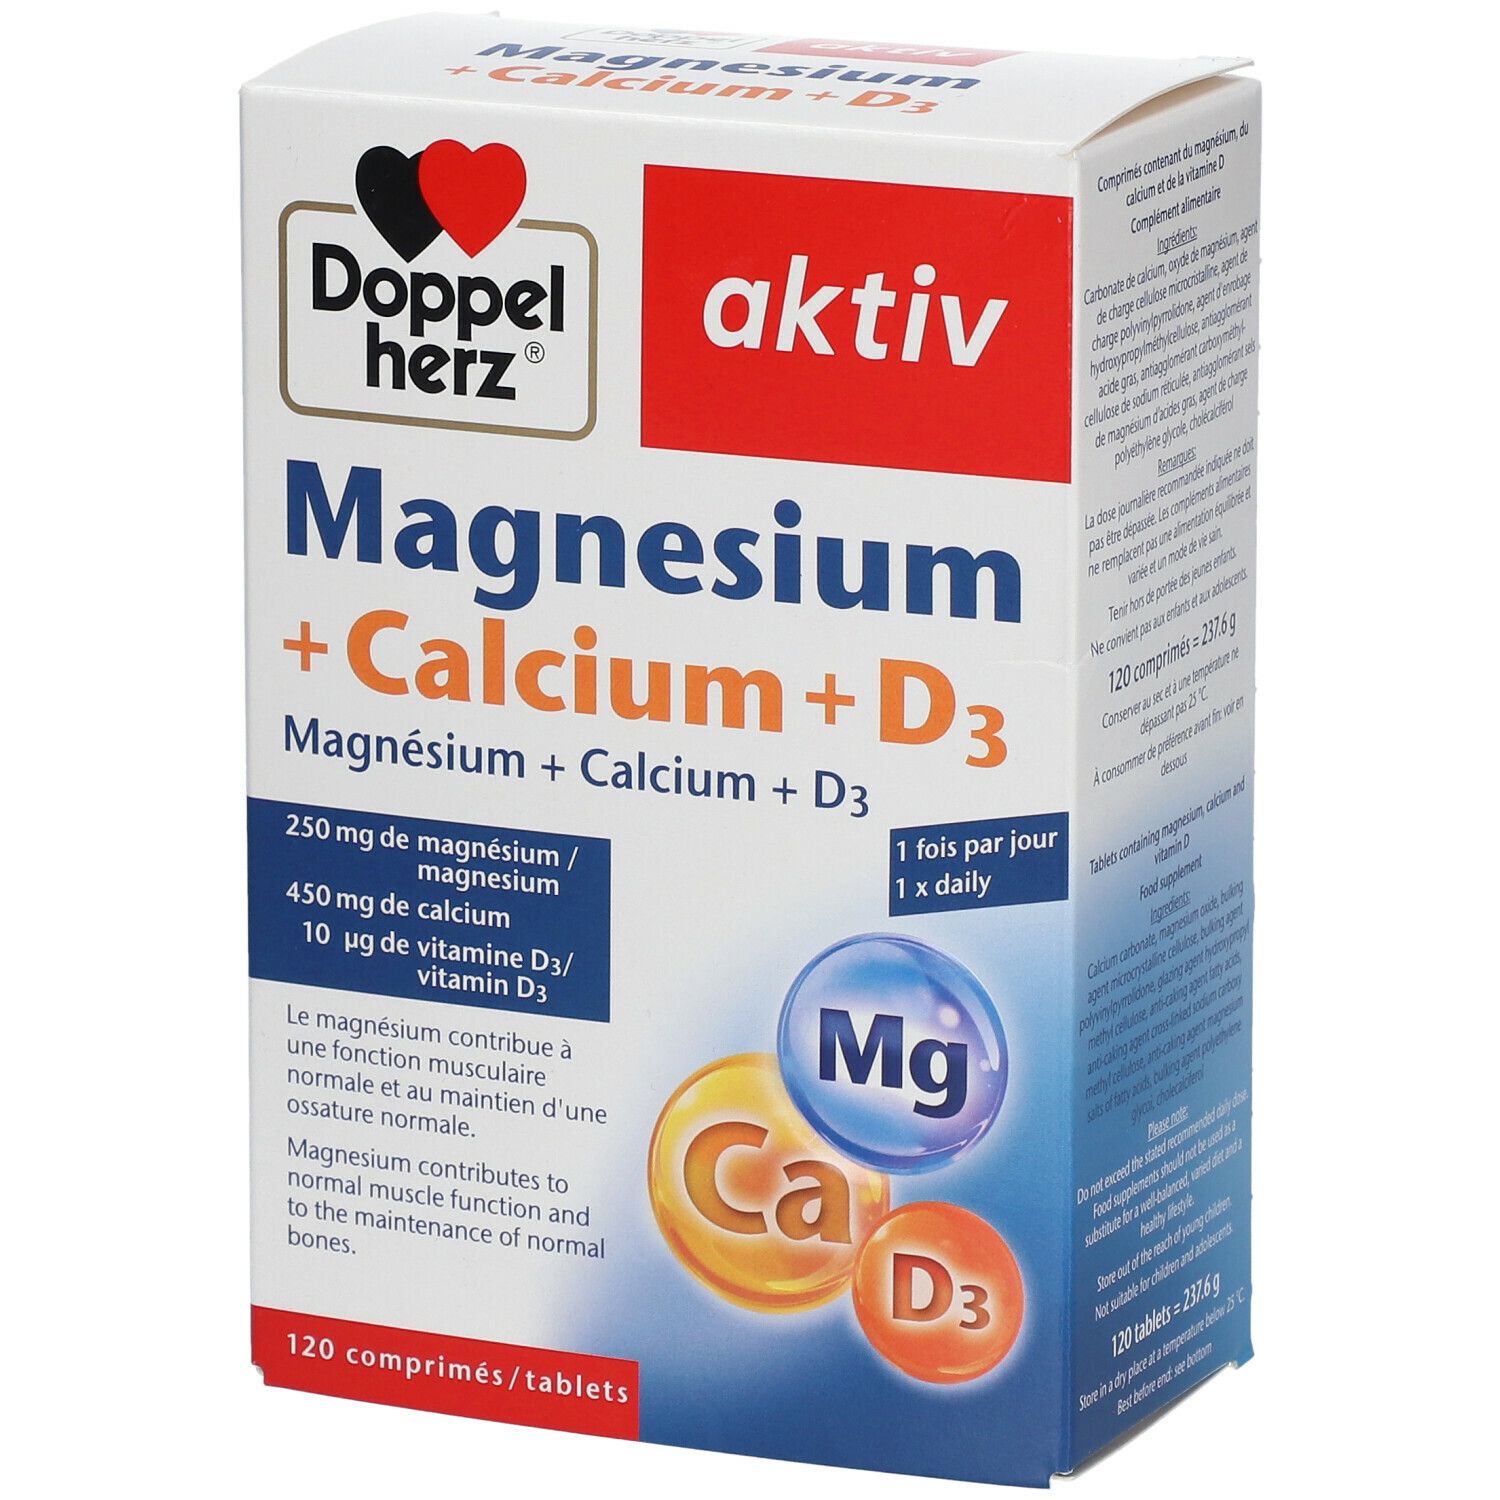 Doppelherz® aktiv Magnesium + Calcium + D3